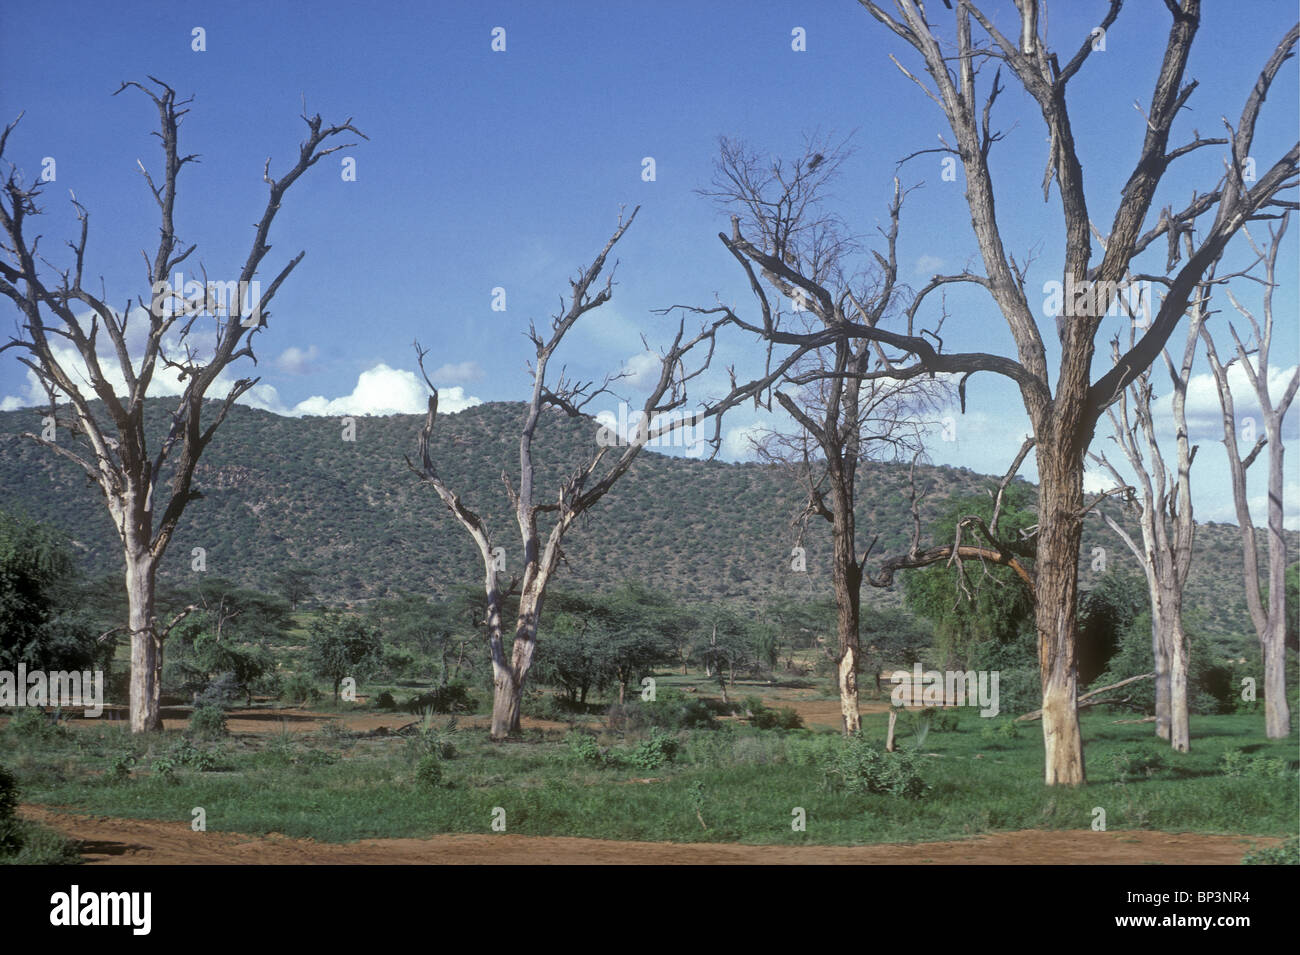 Dead acacia arbres dépouillés de leur écorce et ainsi tués par des éléphants dans la réserve nationale de Samburu, Kenya Afrique de l'Est Banque D'Images